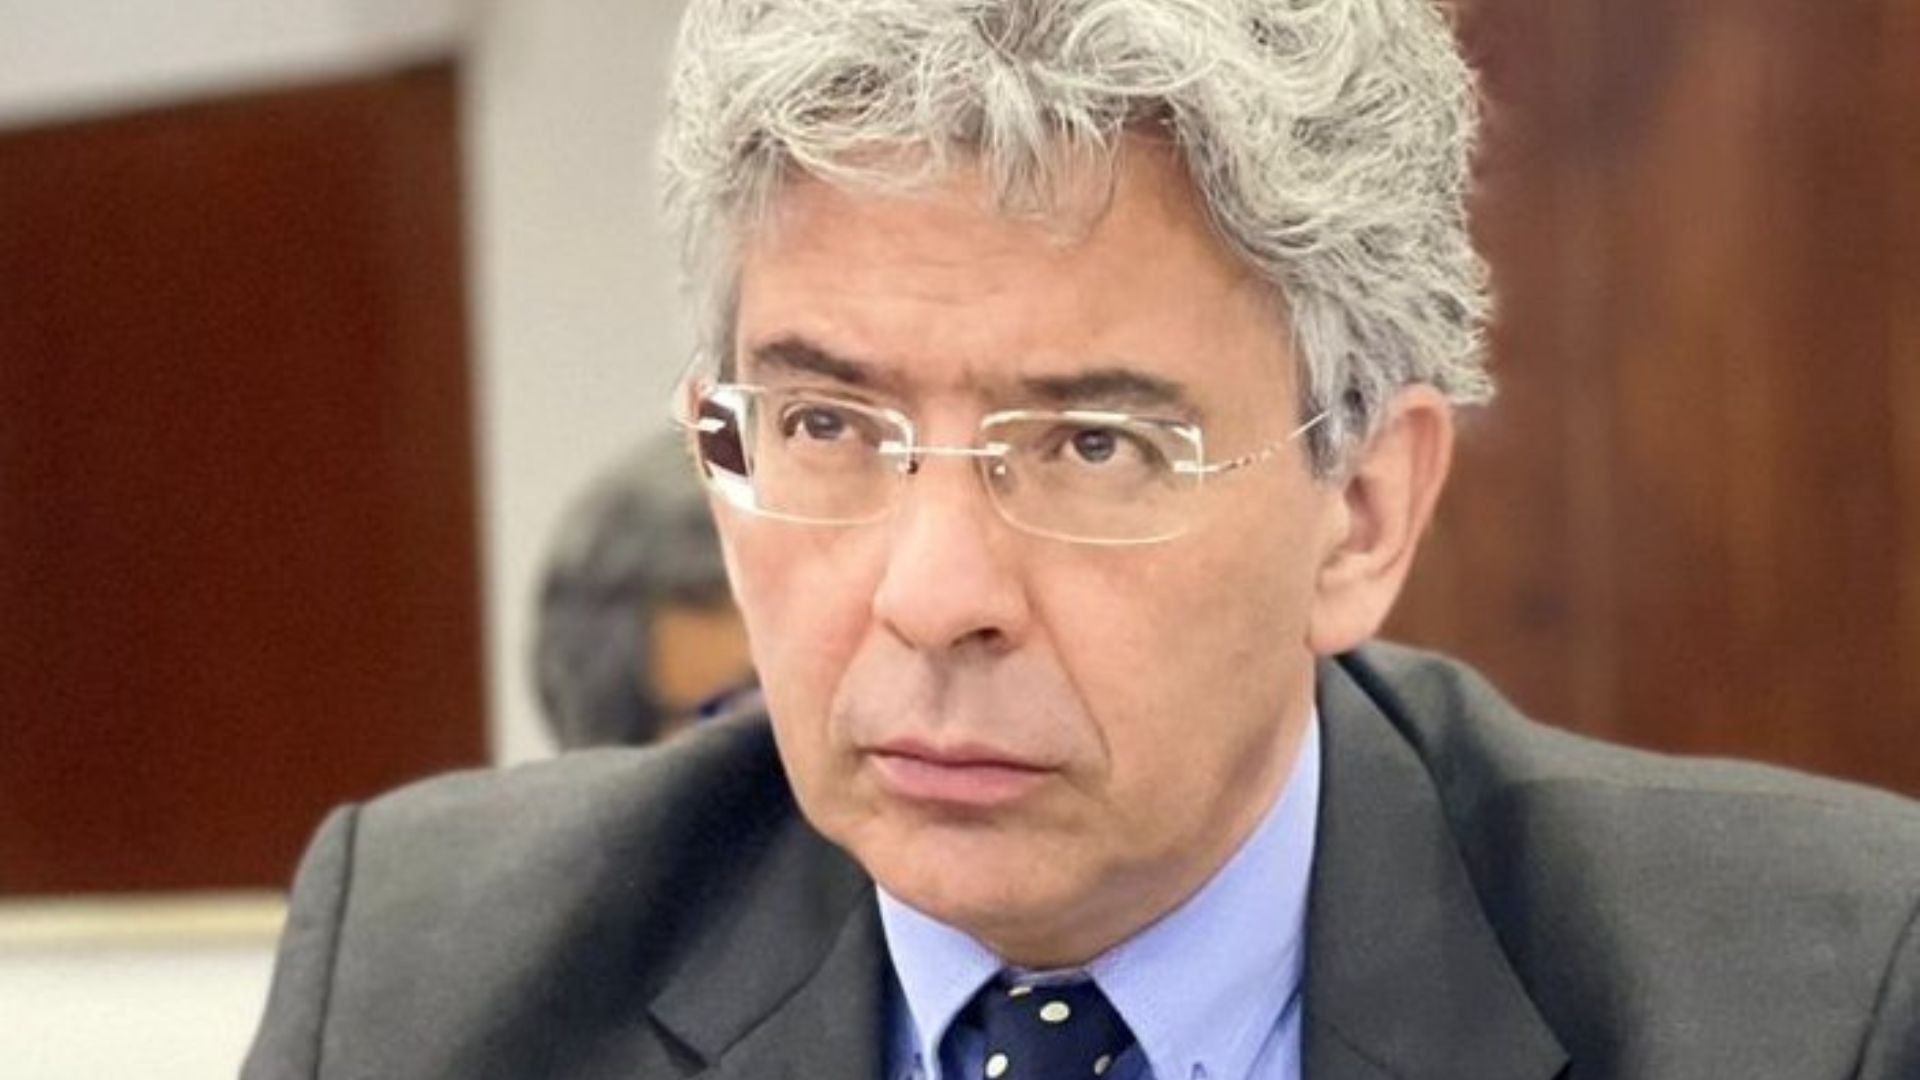 Enrique Gómez arremete en contra de la reforma a la salud: “Al aprobarse esto empeorará sin remedio”